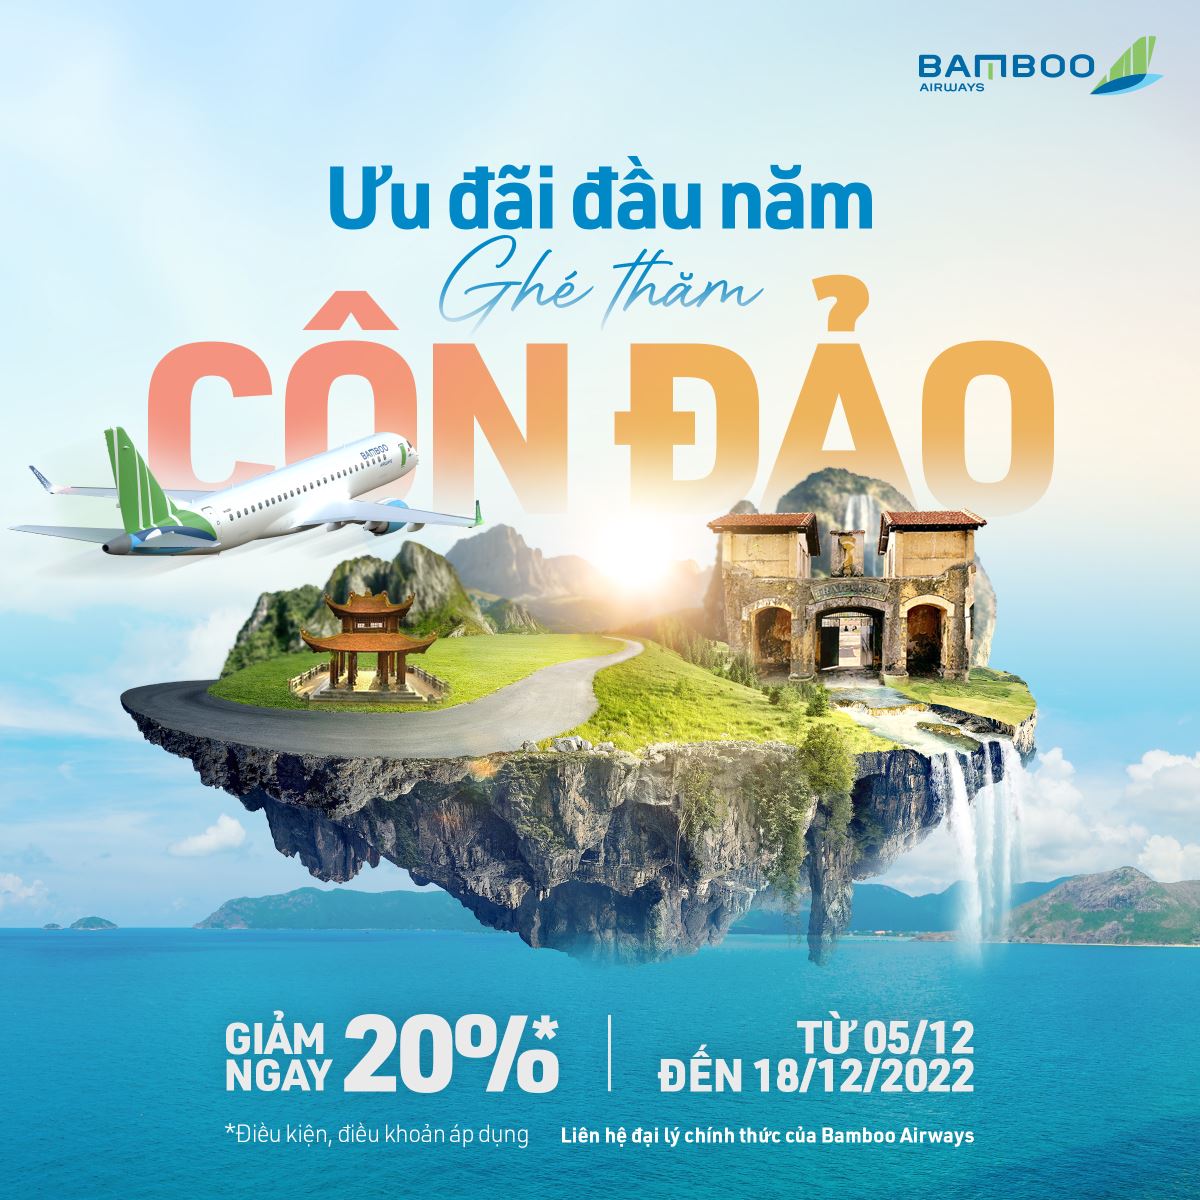 Bamboo Airways (BAV) gửi tới khách hàng chương trình bay Côn Đảo giảm tới 20% dịp cuối năm khi mua vé trên Etrip4u.